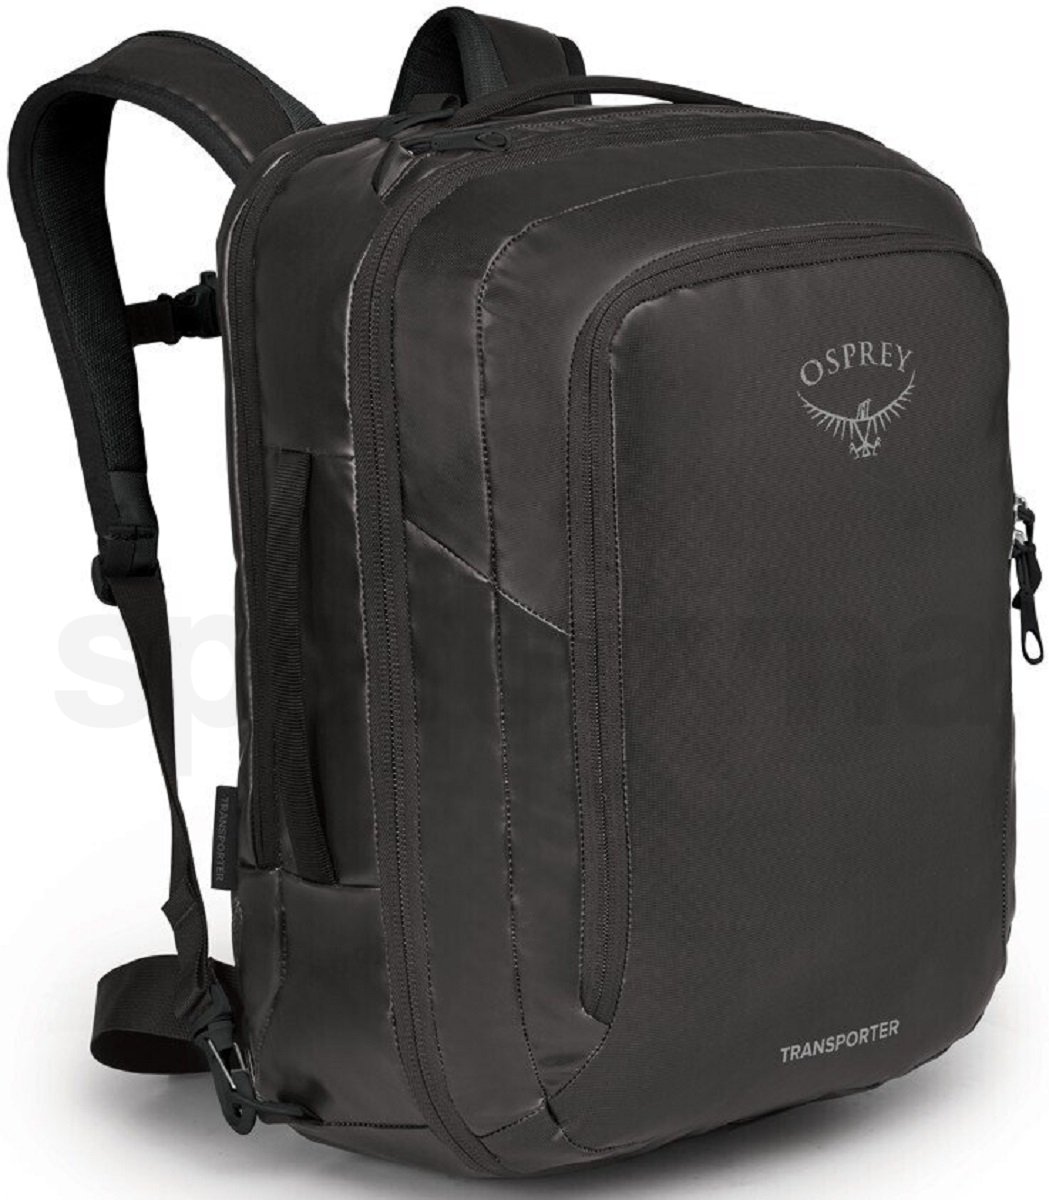 10016596OSP_Transporter Global Carry-On Bag, black